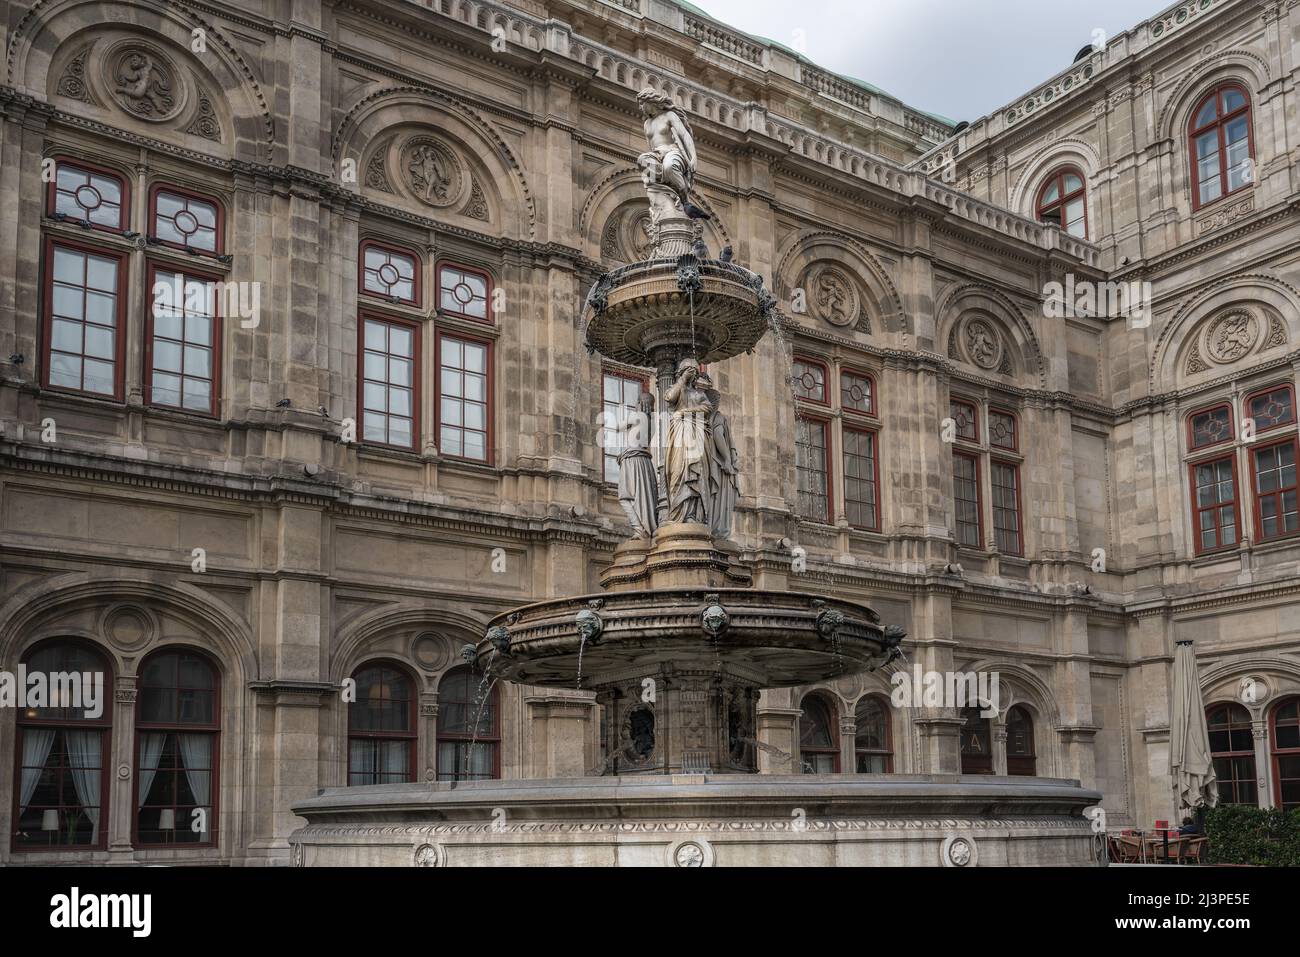 Fontaine de l'Opéra (Opernbrunnen) à l'Opéra national de Vienne (Wiener Staatsoper) - Vienne, Autriche Banque D'Images